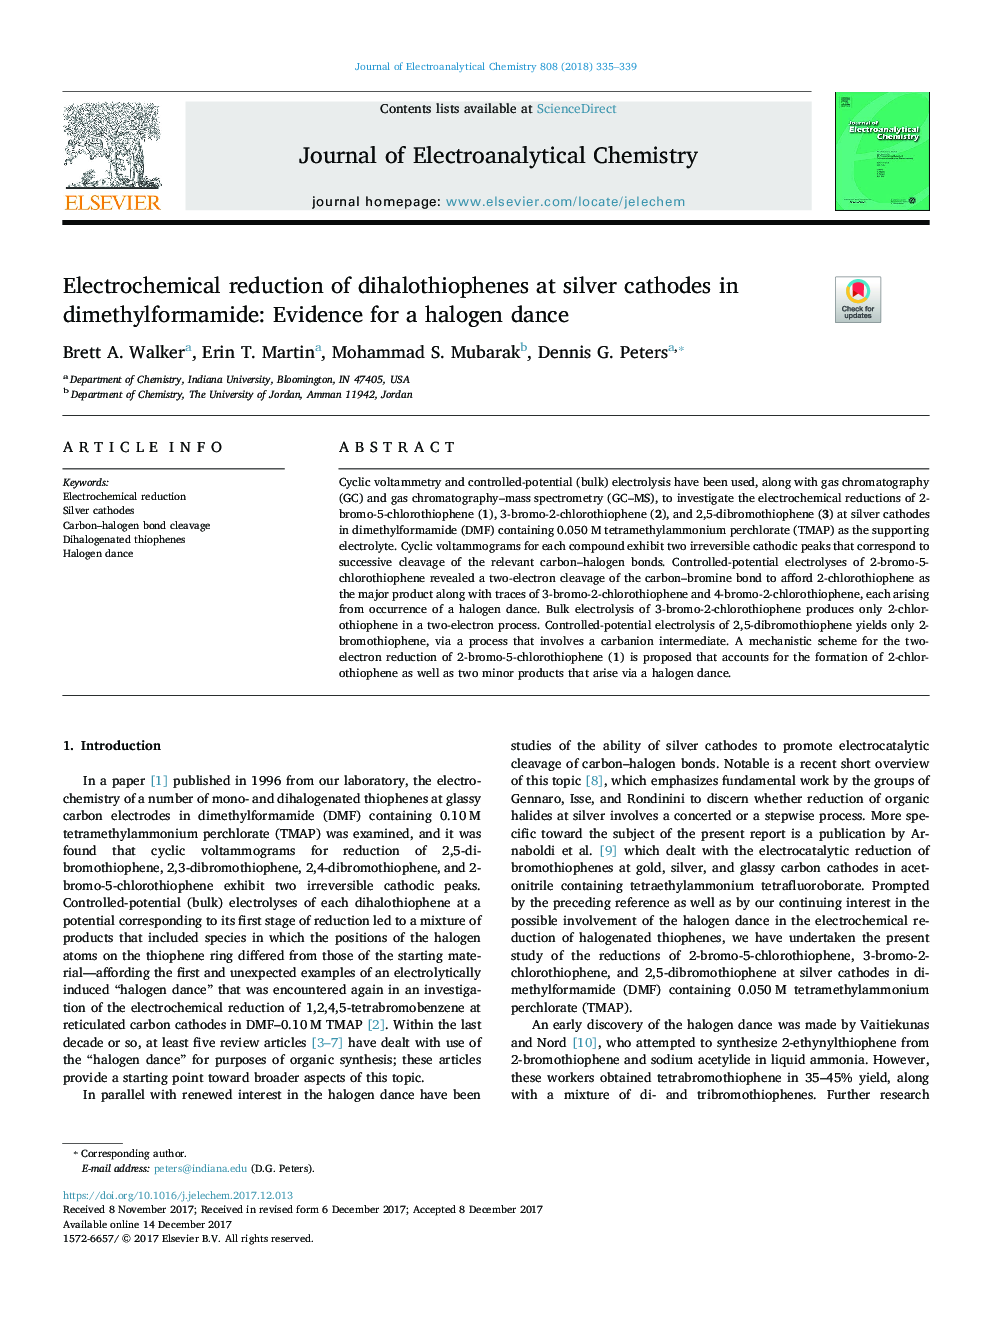 کاهش الکتروشیمیایی دیالووتیوفنها در کاتد نقره در دی متیل فرمالید: شواهدی برای رقص هالوژن 